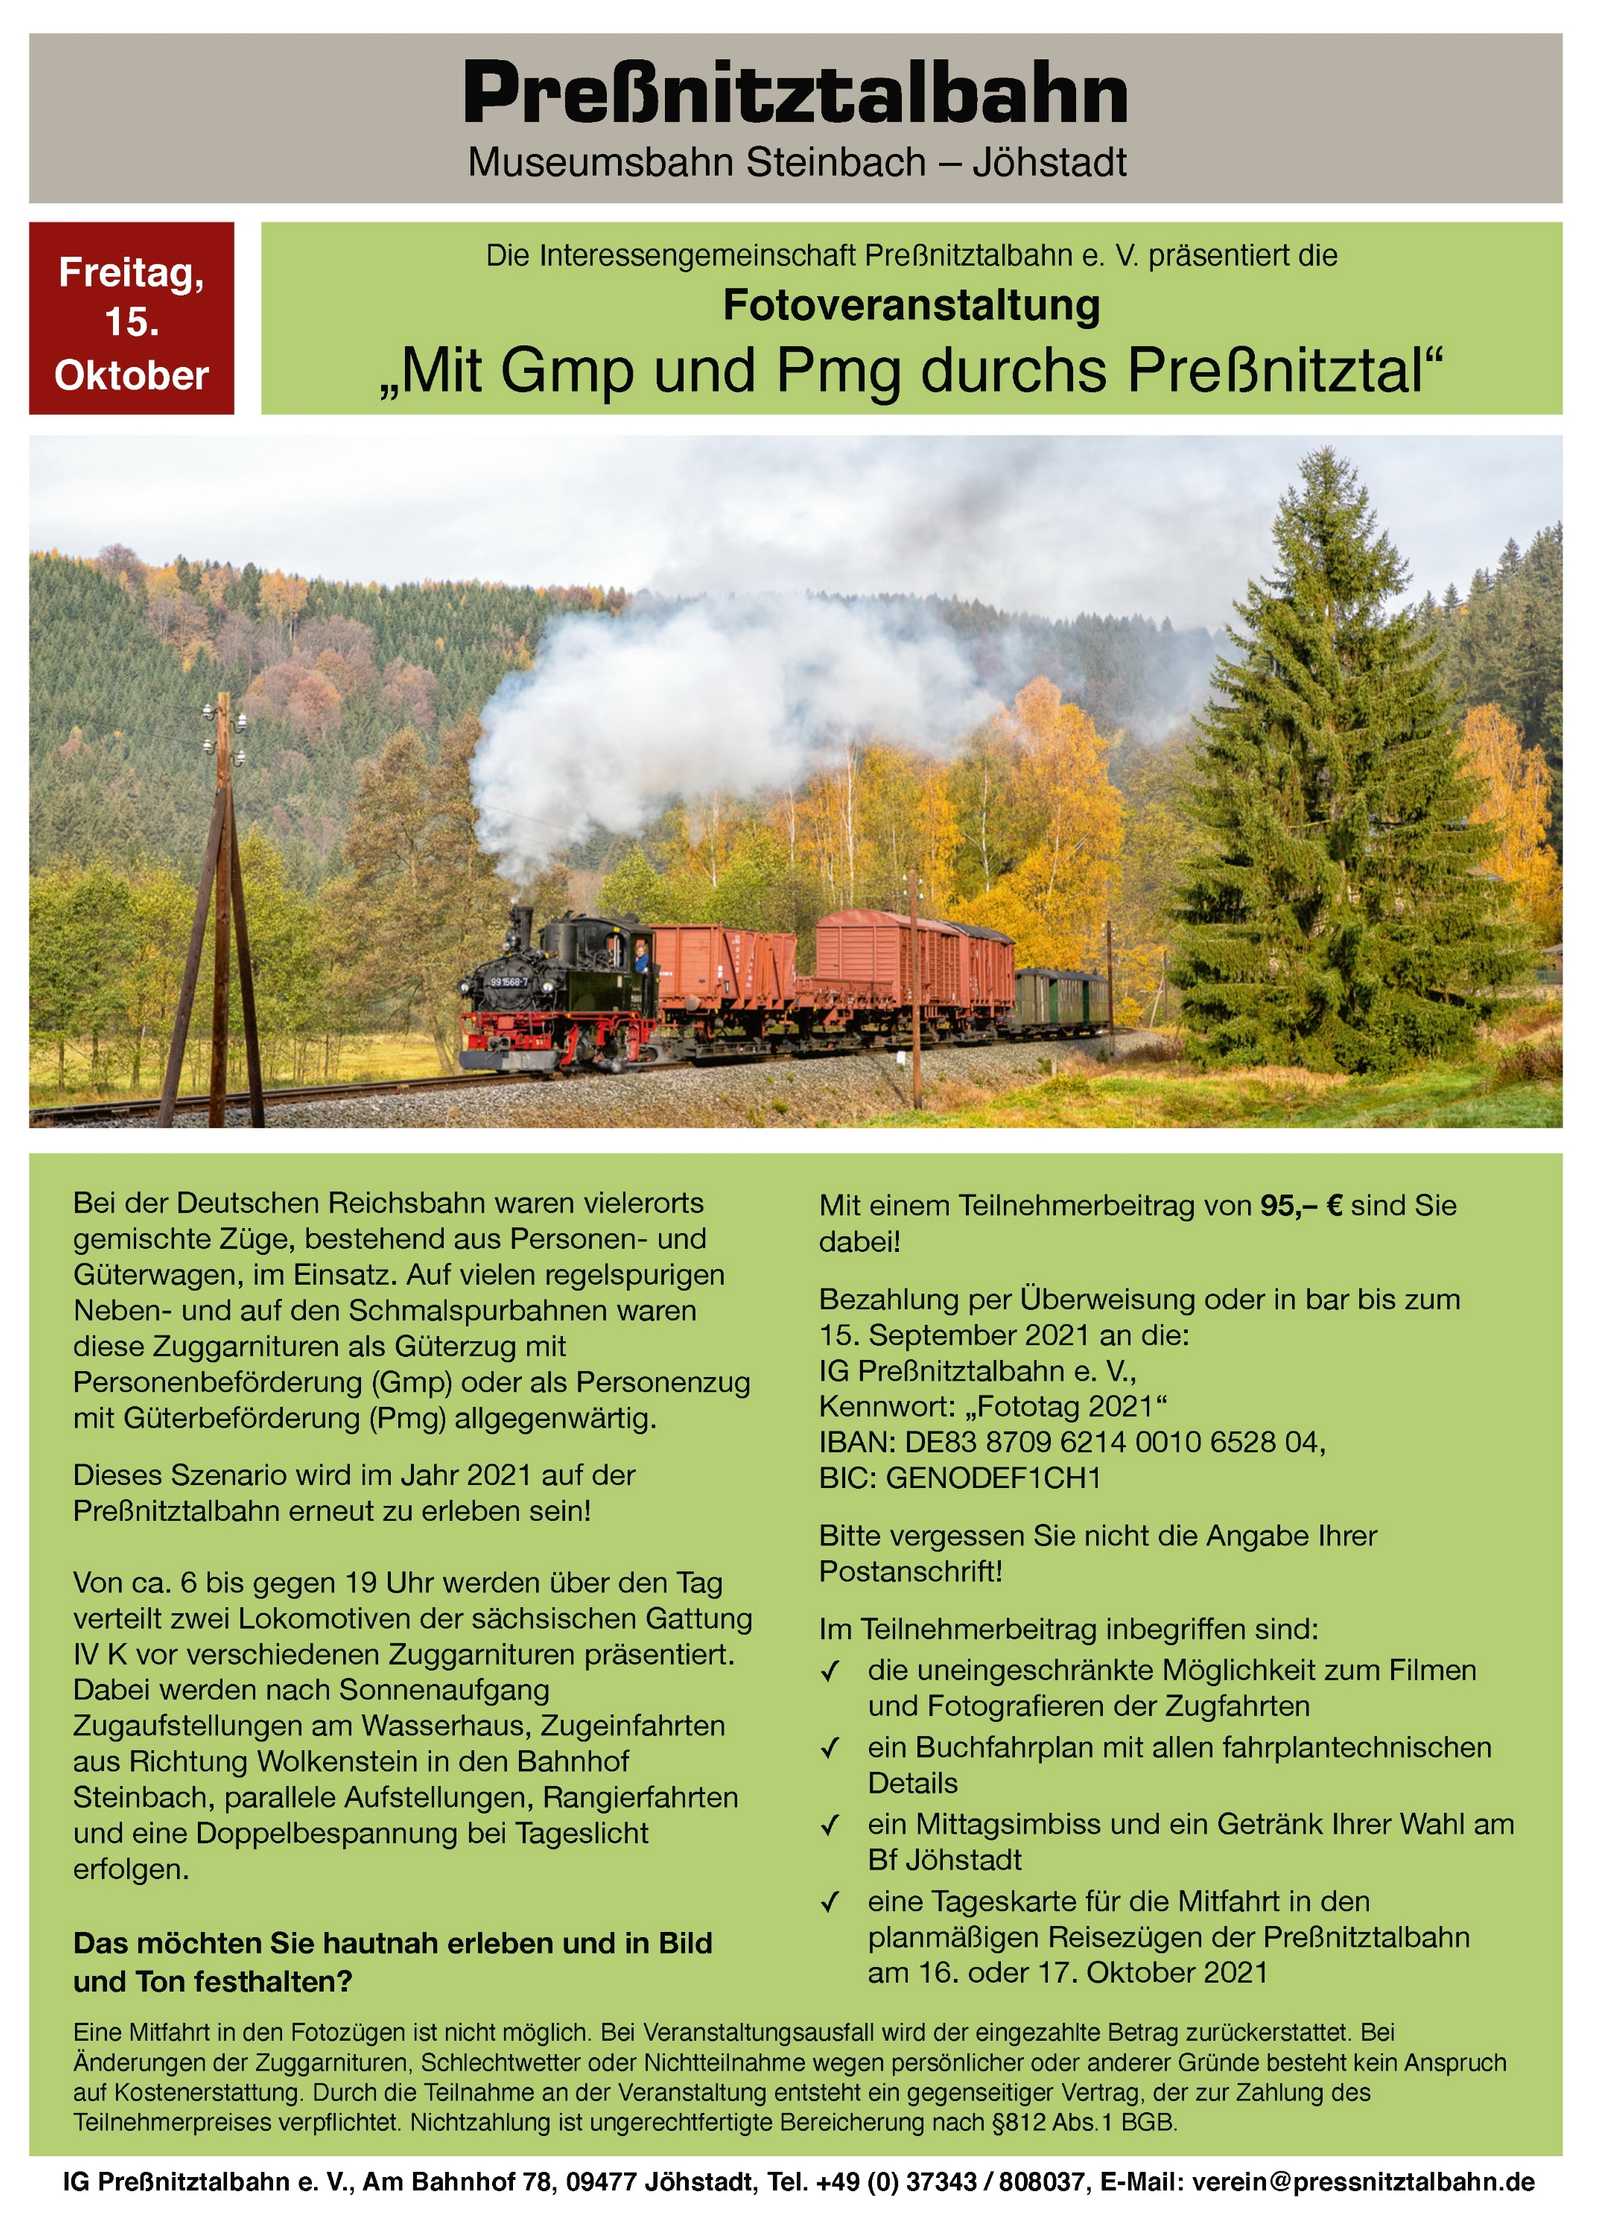 Veranstaltungsankündigung 15. Oktober 2021: Fotoveranstaltung "Mit Gmp und Pmg durchs Preßnitztal"